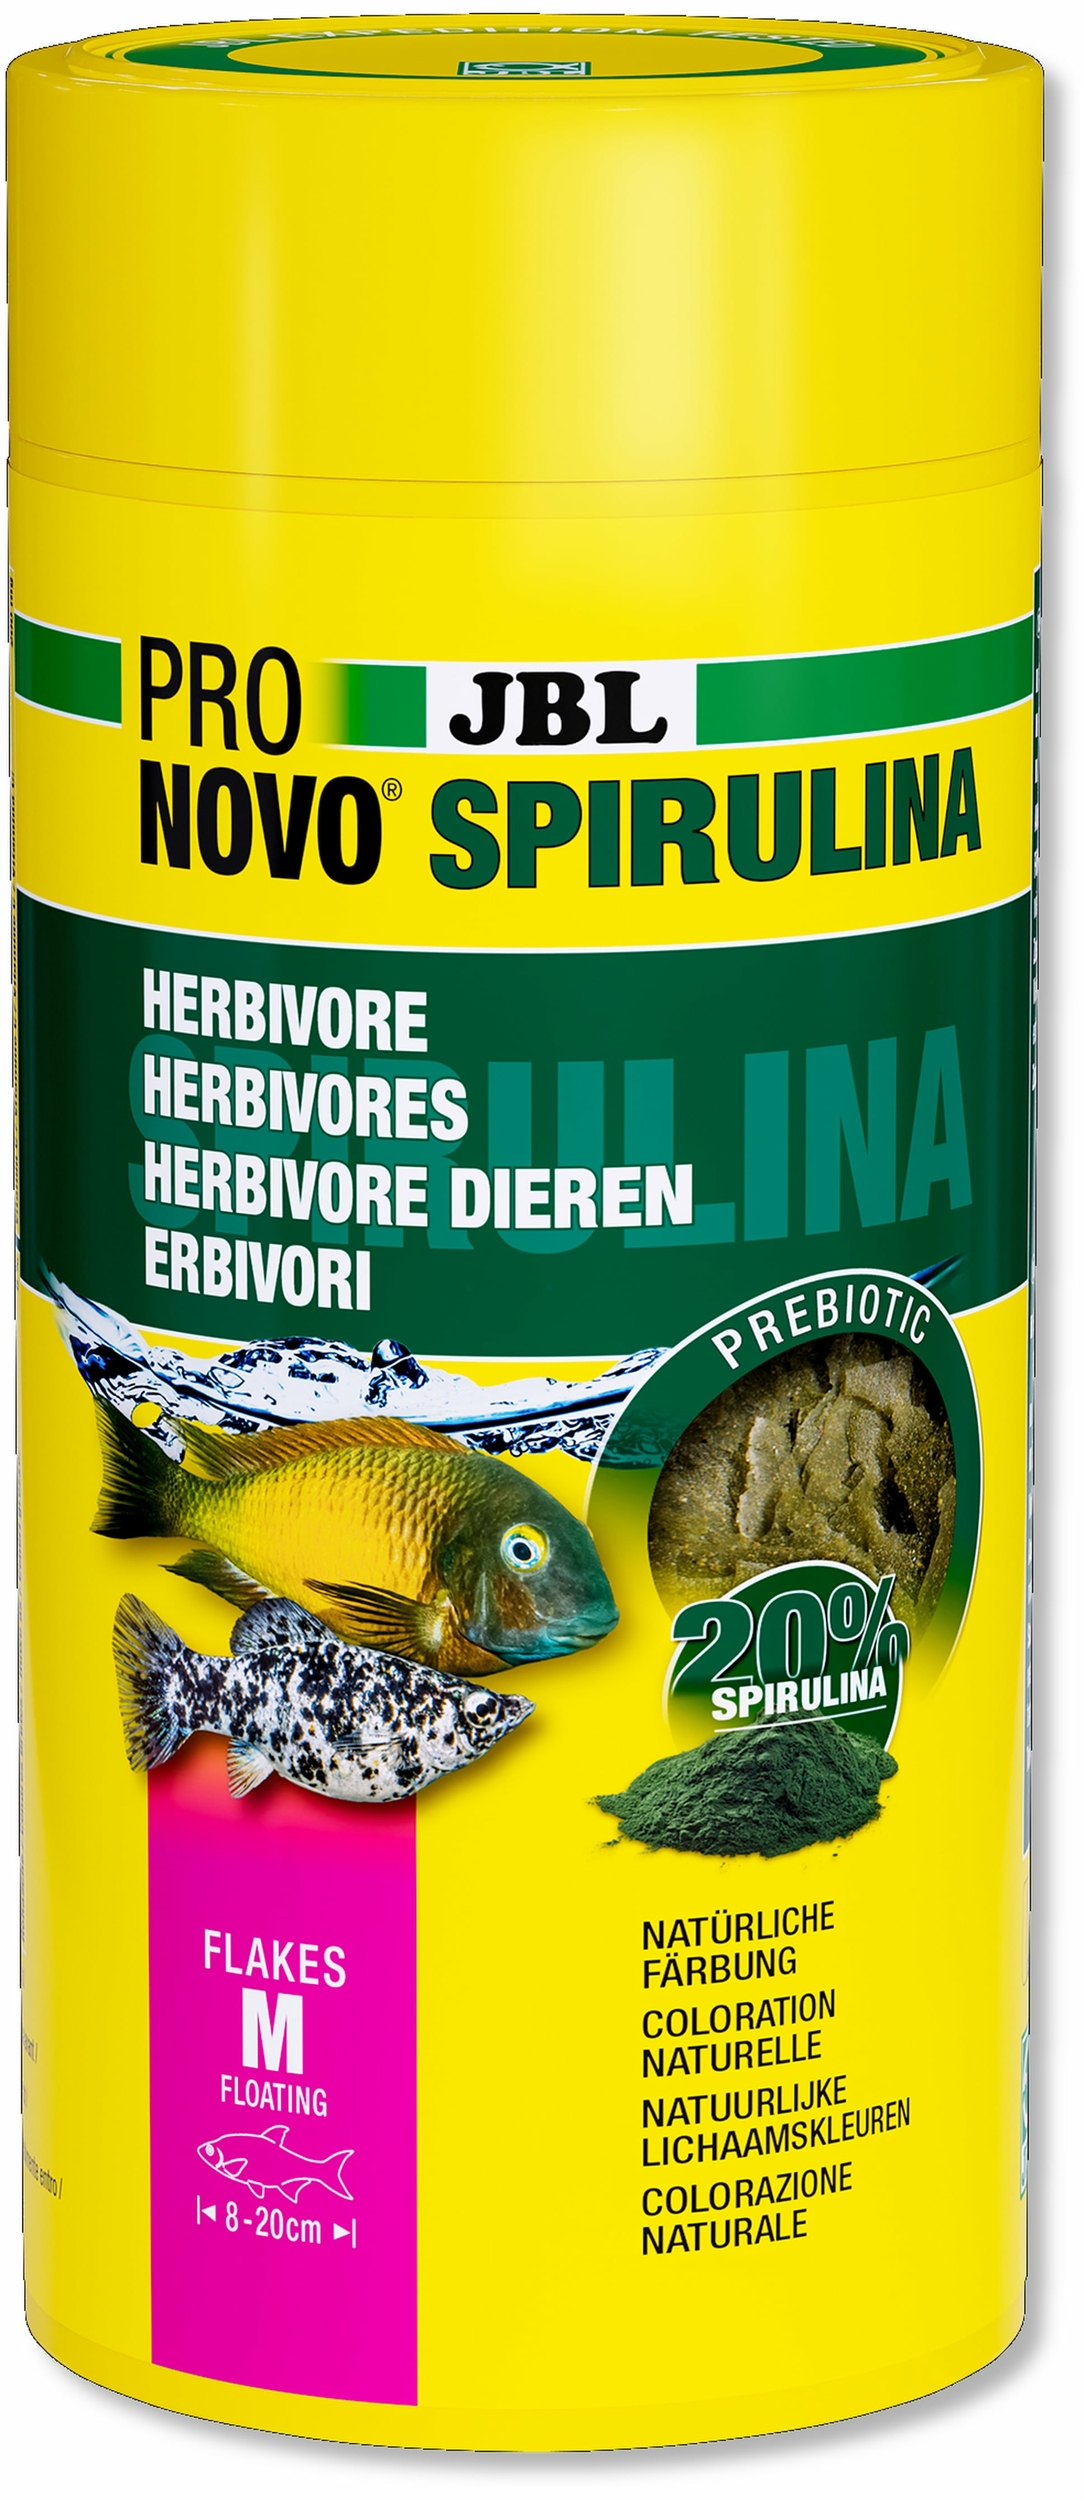 jbl-pronovo-spirulina-flakes-m-1000-ml-nourriture-en-flocons-a-base-de-spiruline-pour-tous-poissons-d-aquarium-de-8-a-20-cm